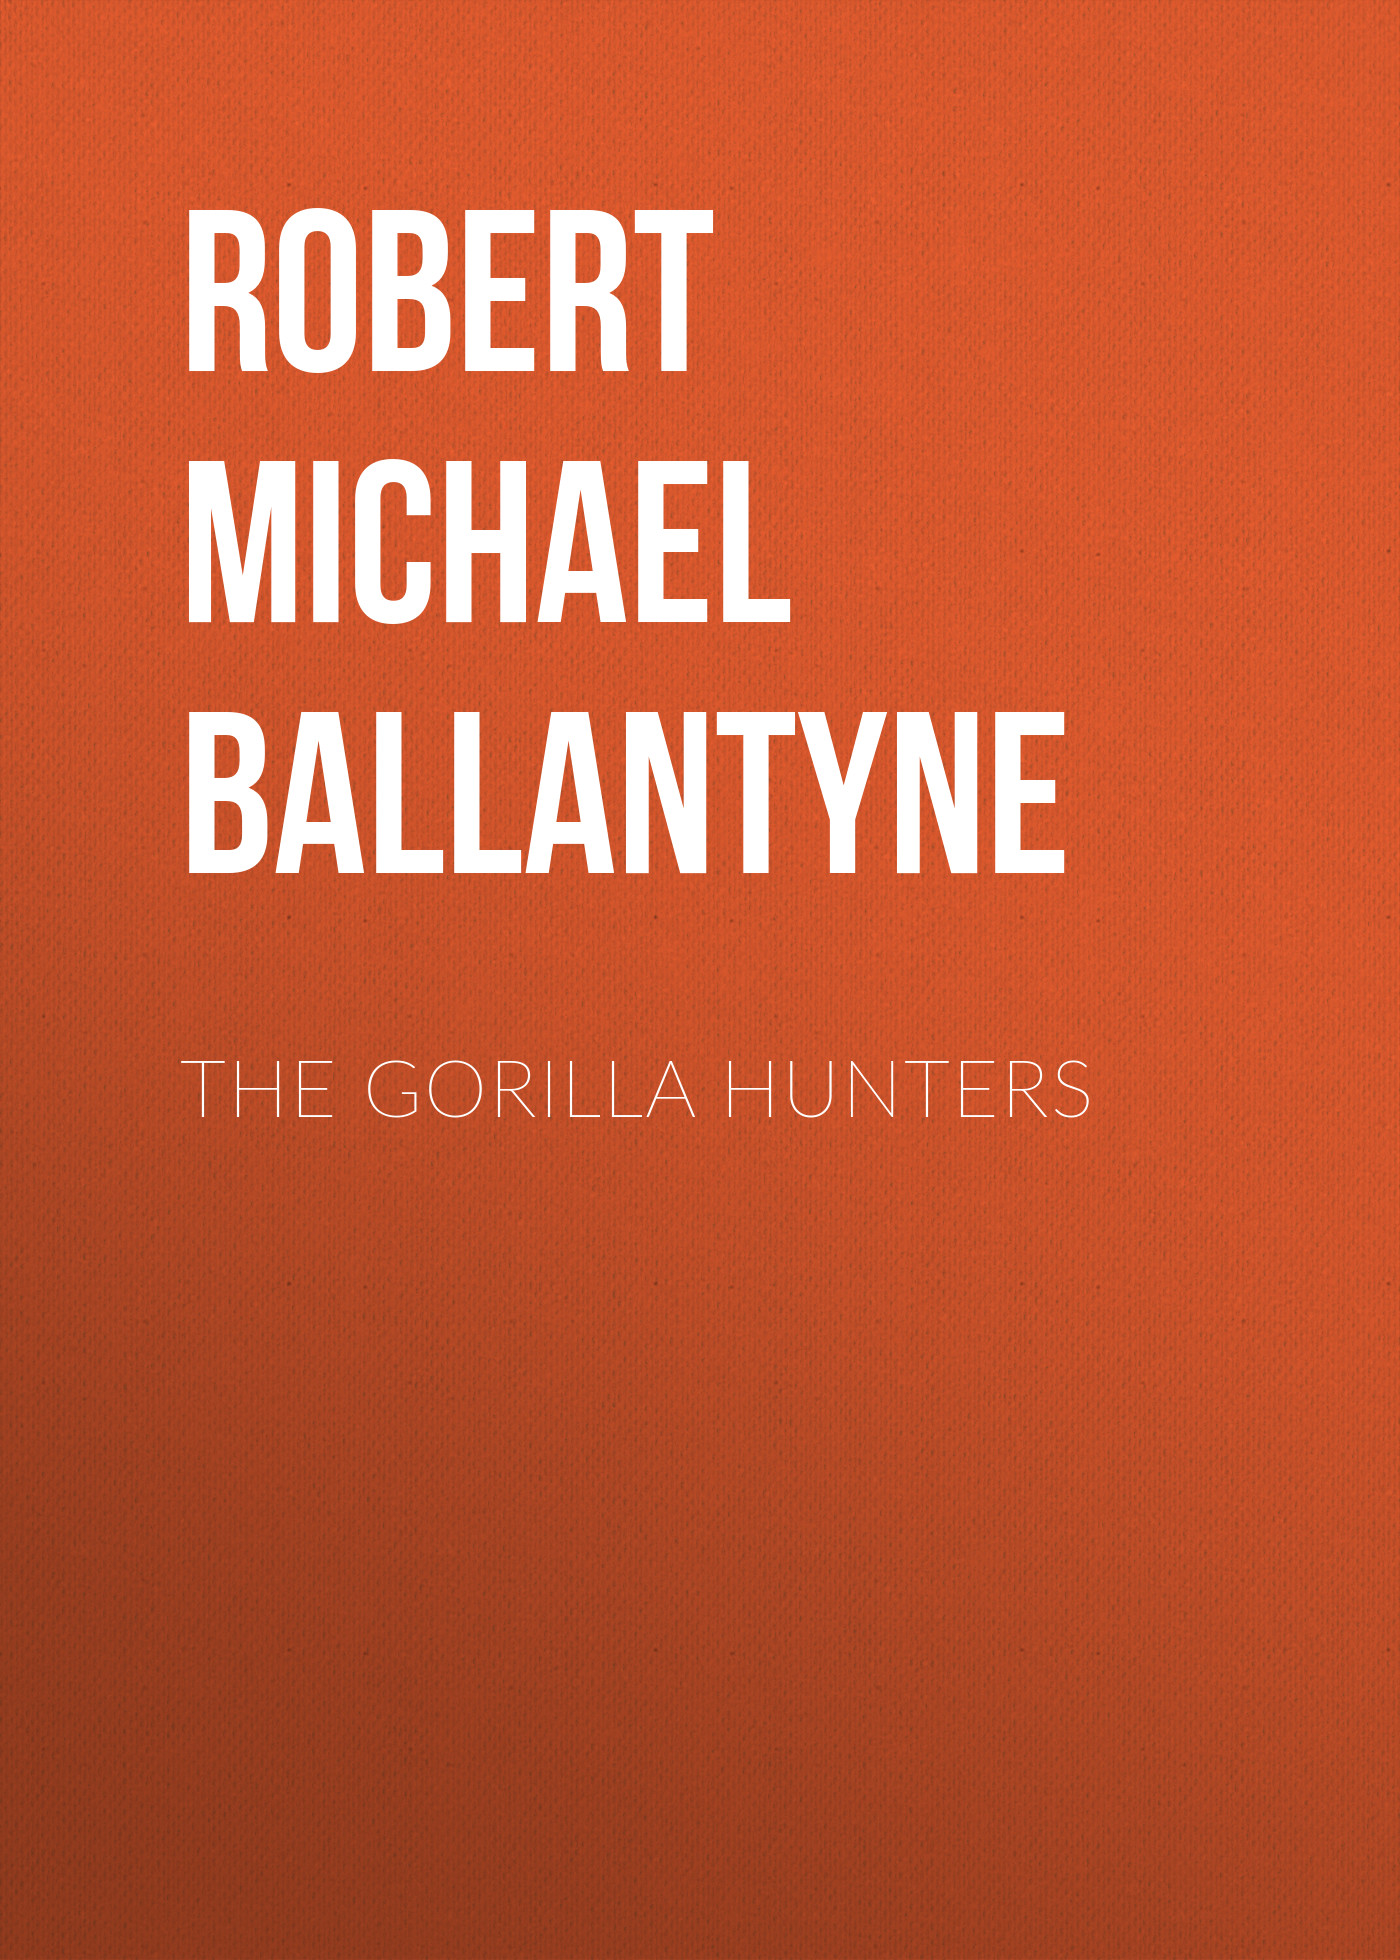 Книга The Gorilla Hunters из серии , созданная Robert Michael Ballantyne, может относится к жанру Зарубежные детские книги, Литература 19 века, Зарубежная старинная литература, Зарубежная классика. Стоимость электронной книги The Gorilla Hunters с идентификатором 36095189 составляет 0 руб.